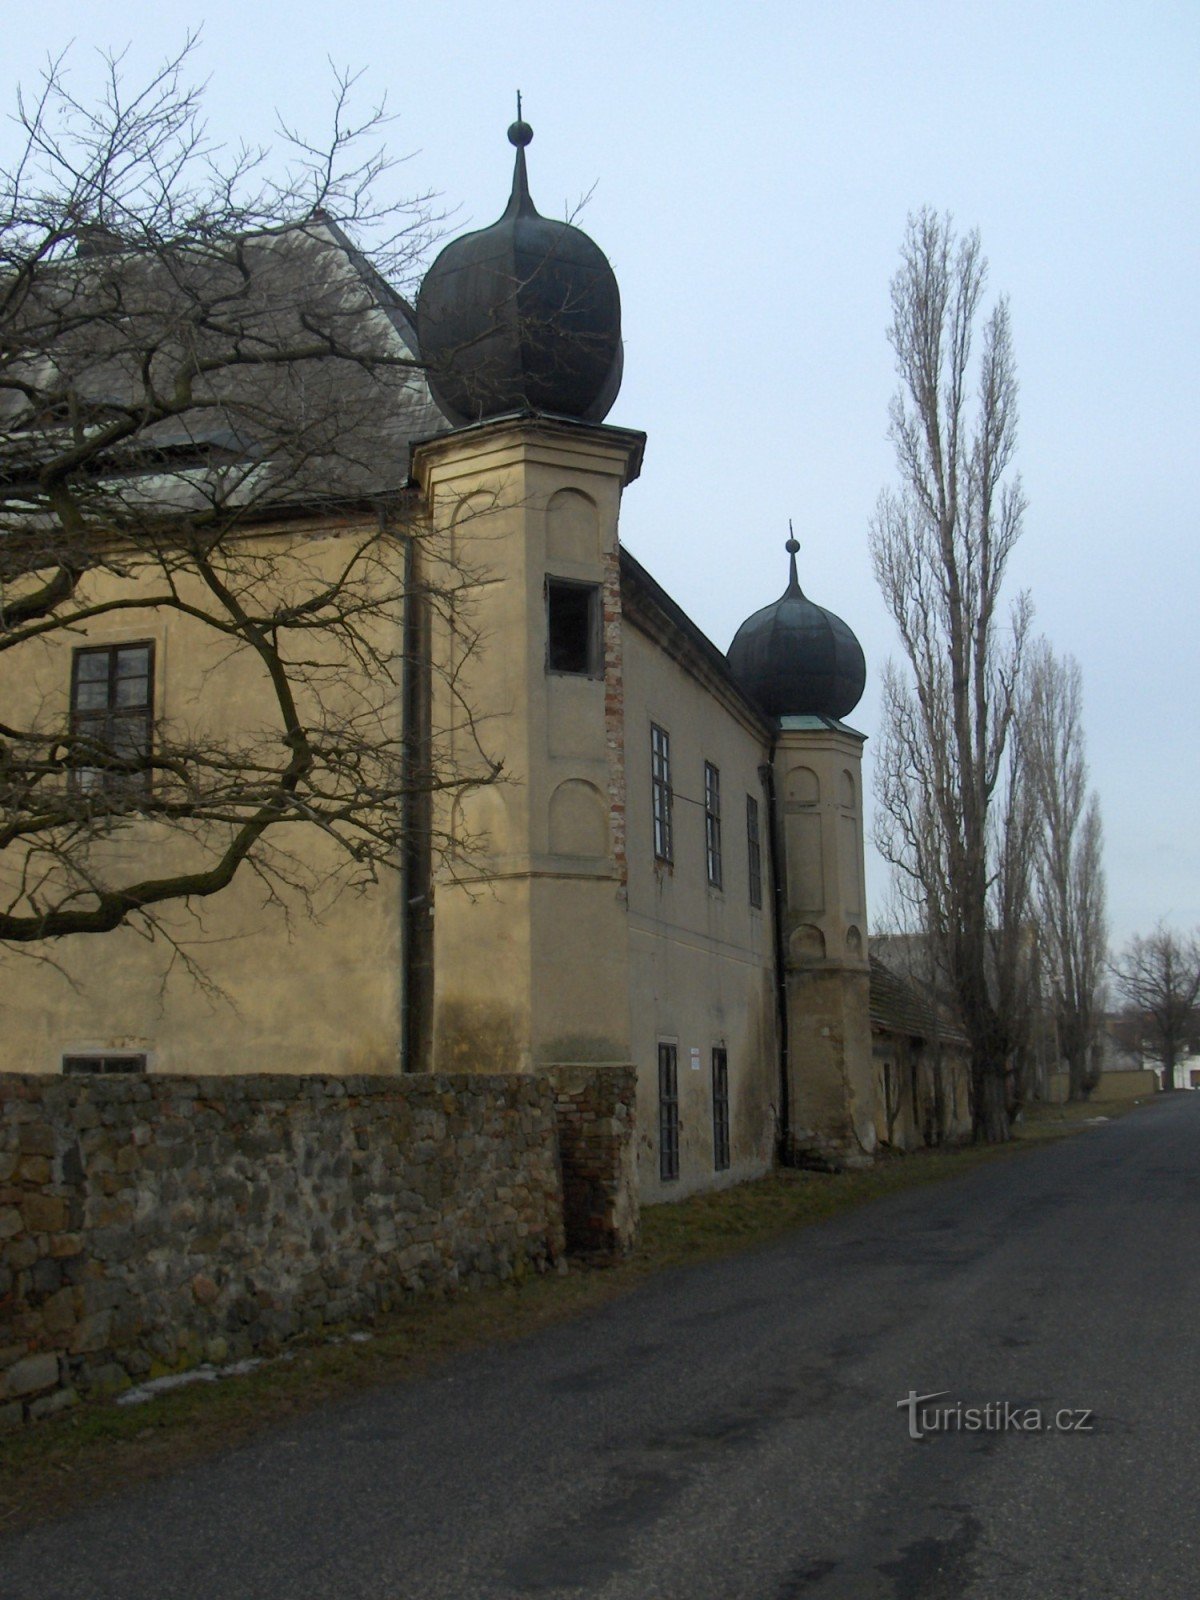 Château de Vičice